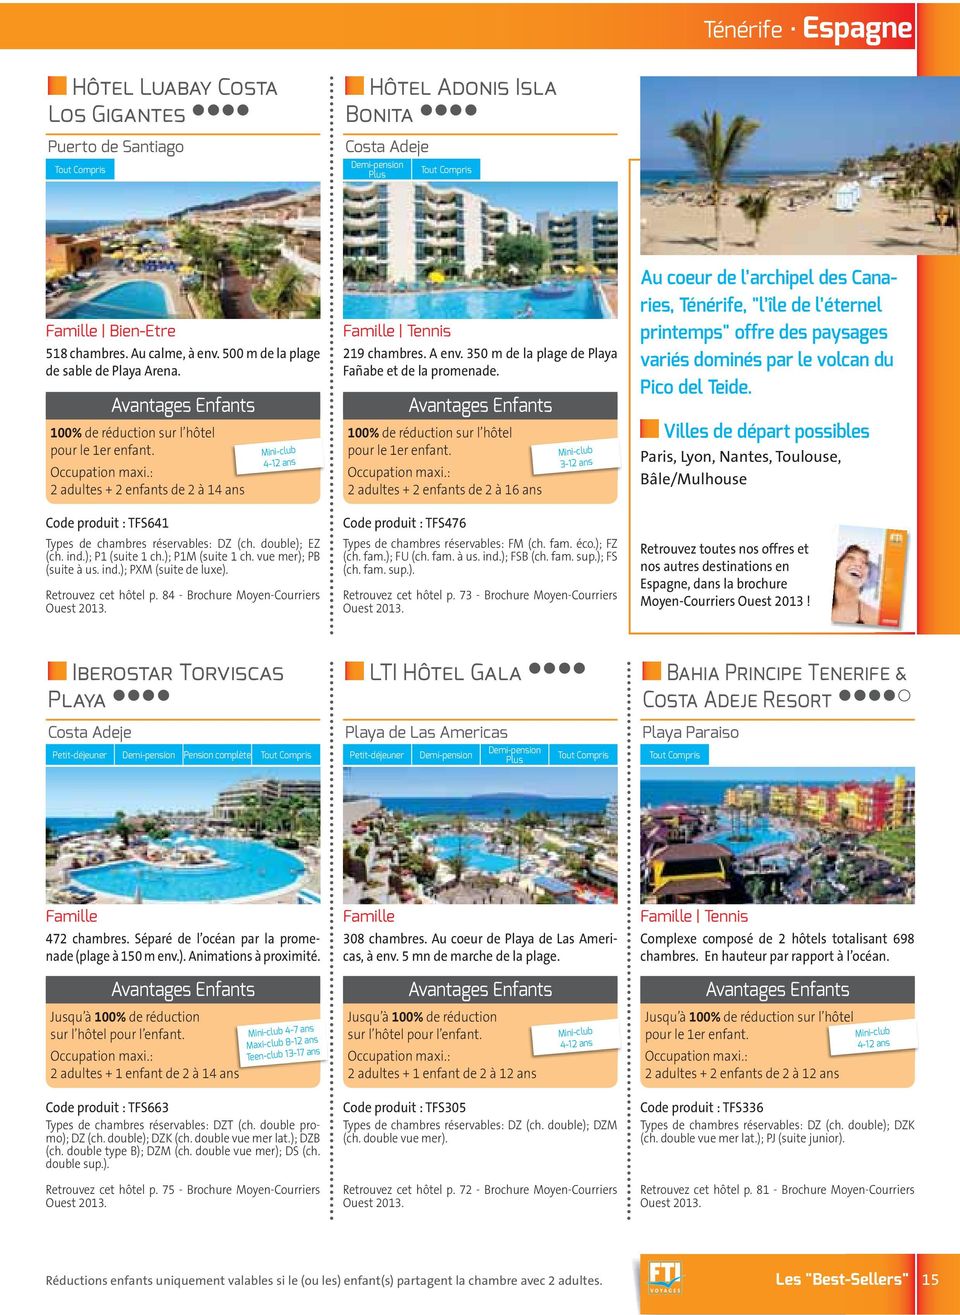 Retrouvez cet hôtel p. 84 - Brochure Moyen-Courriers Tennis 219 chambres. A env. 350 m de la plage de Playa Fañabe et de la promenade.